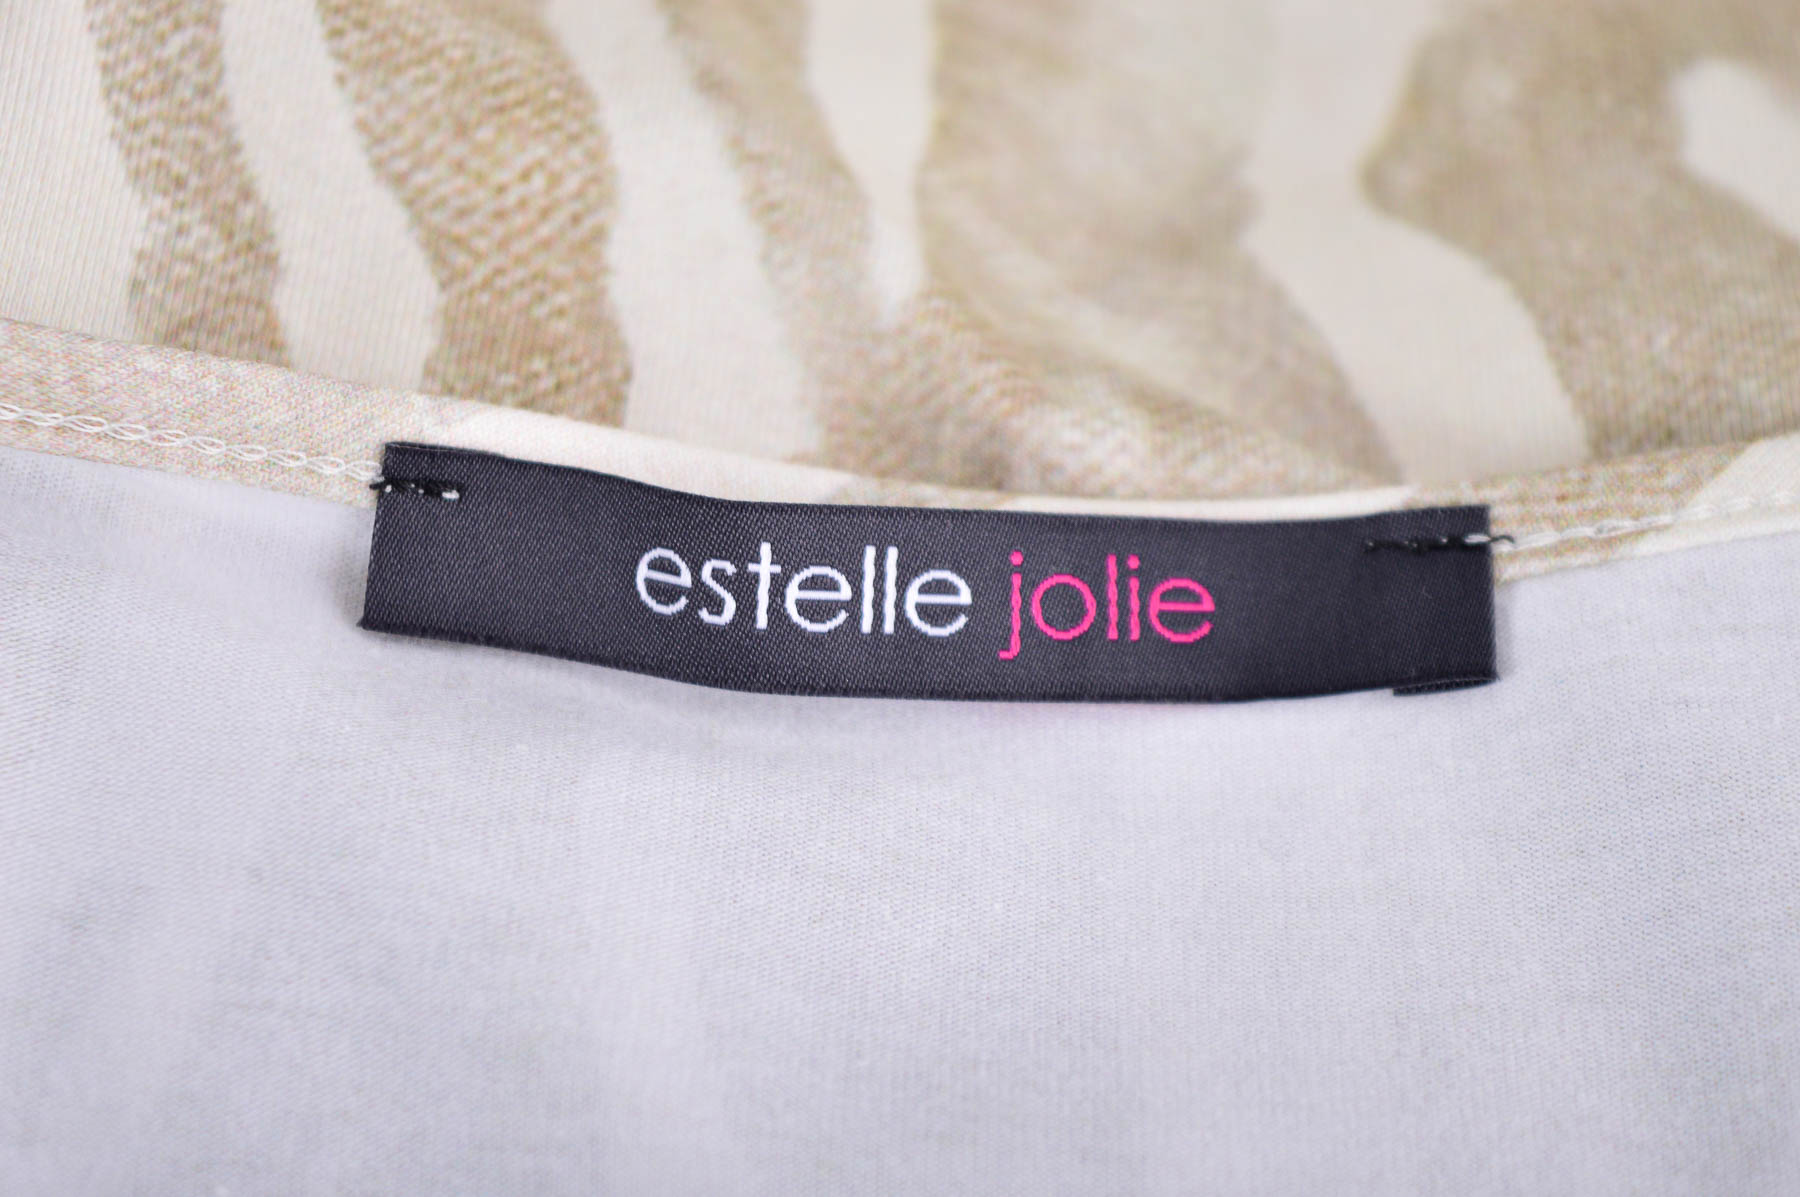 Γυναικείο φανελάκι - Estelle jolie - 2